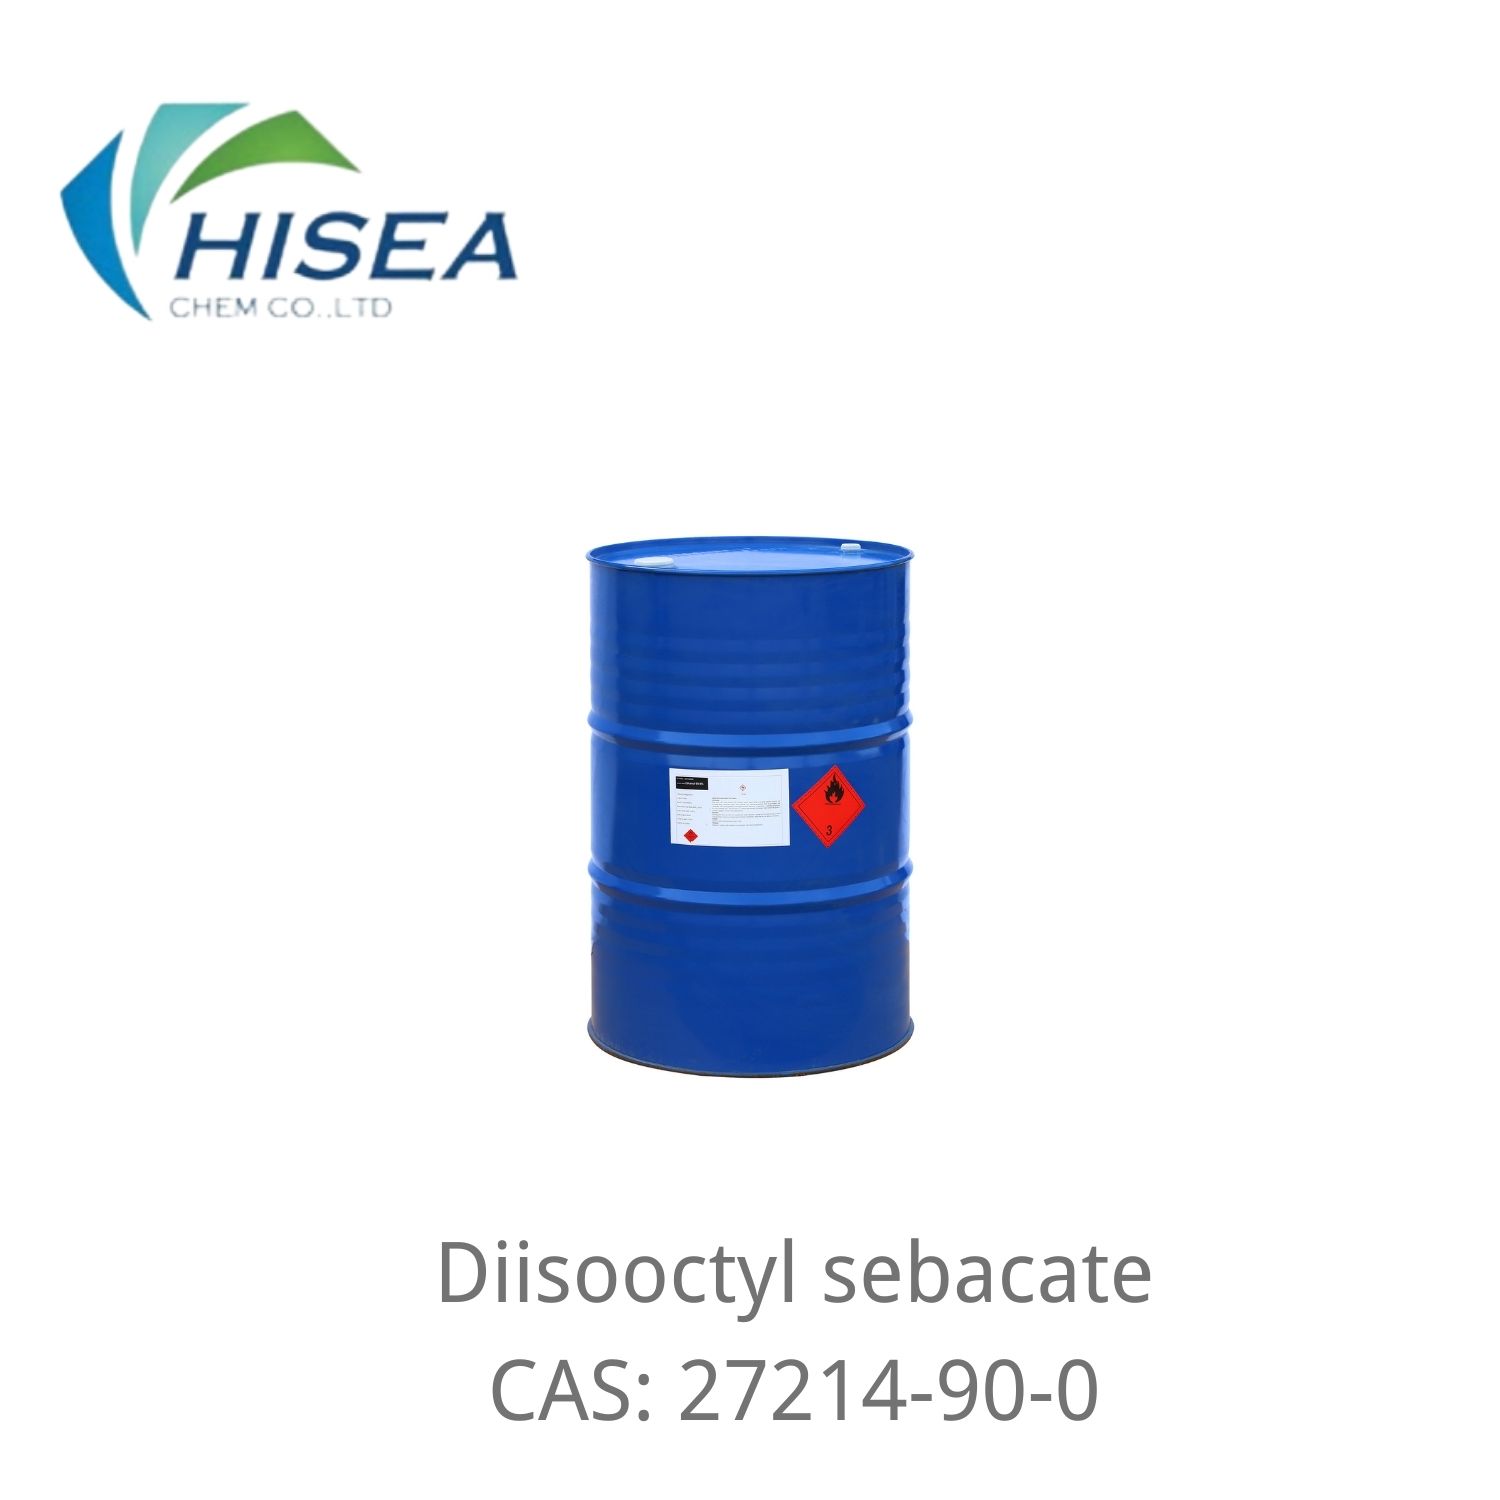 Sébacate de diisooctyle organique de haute pureté de qualité industrielle